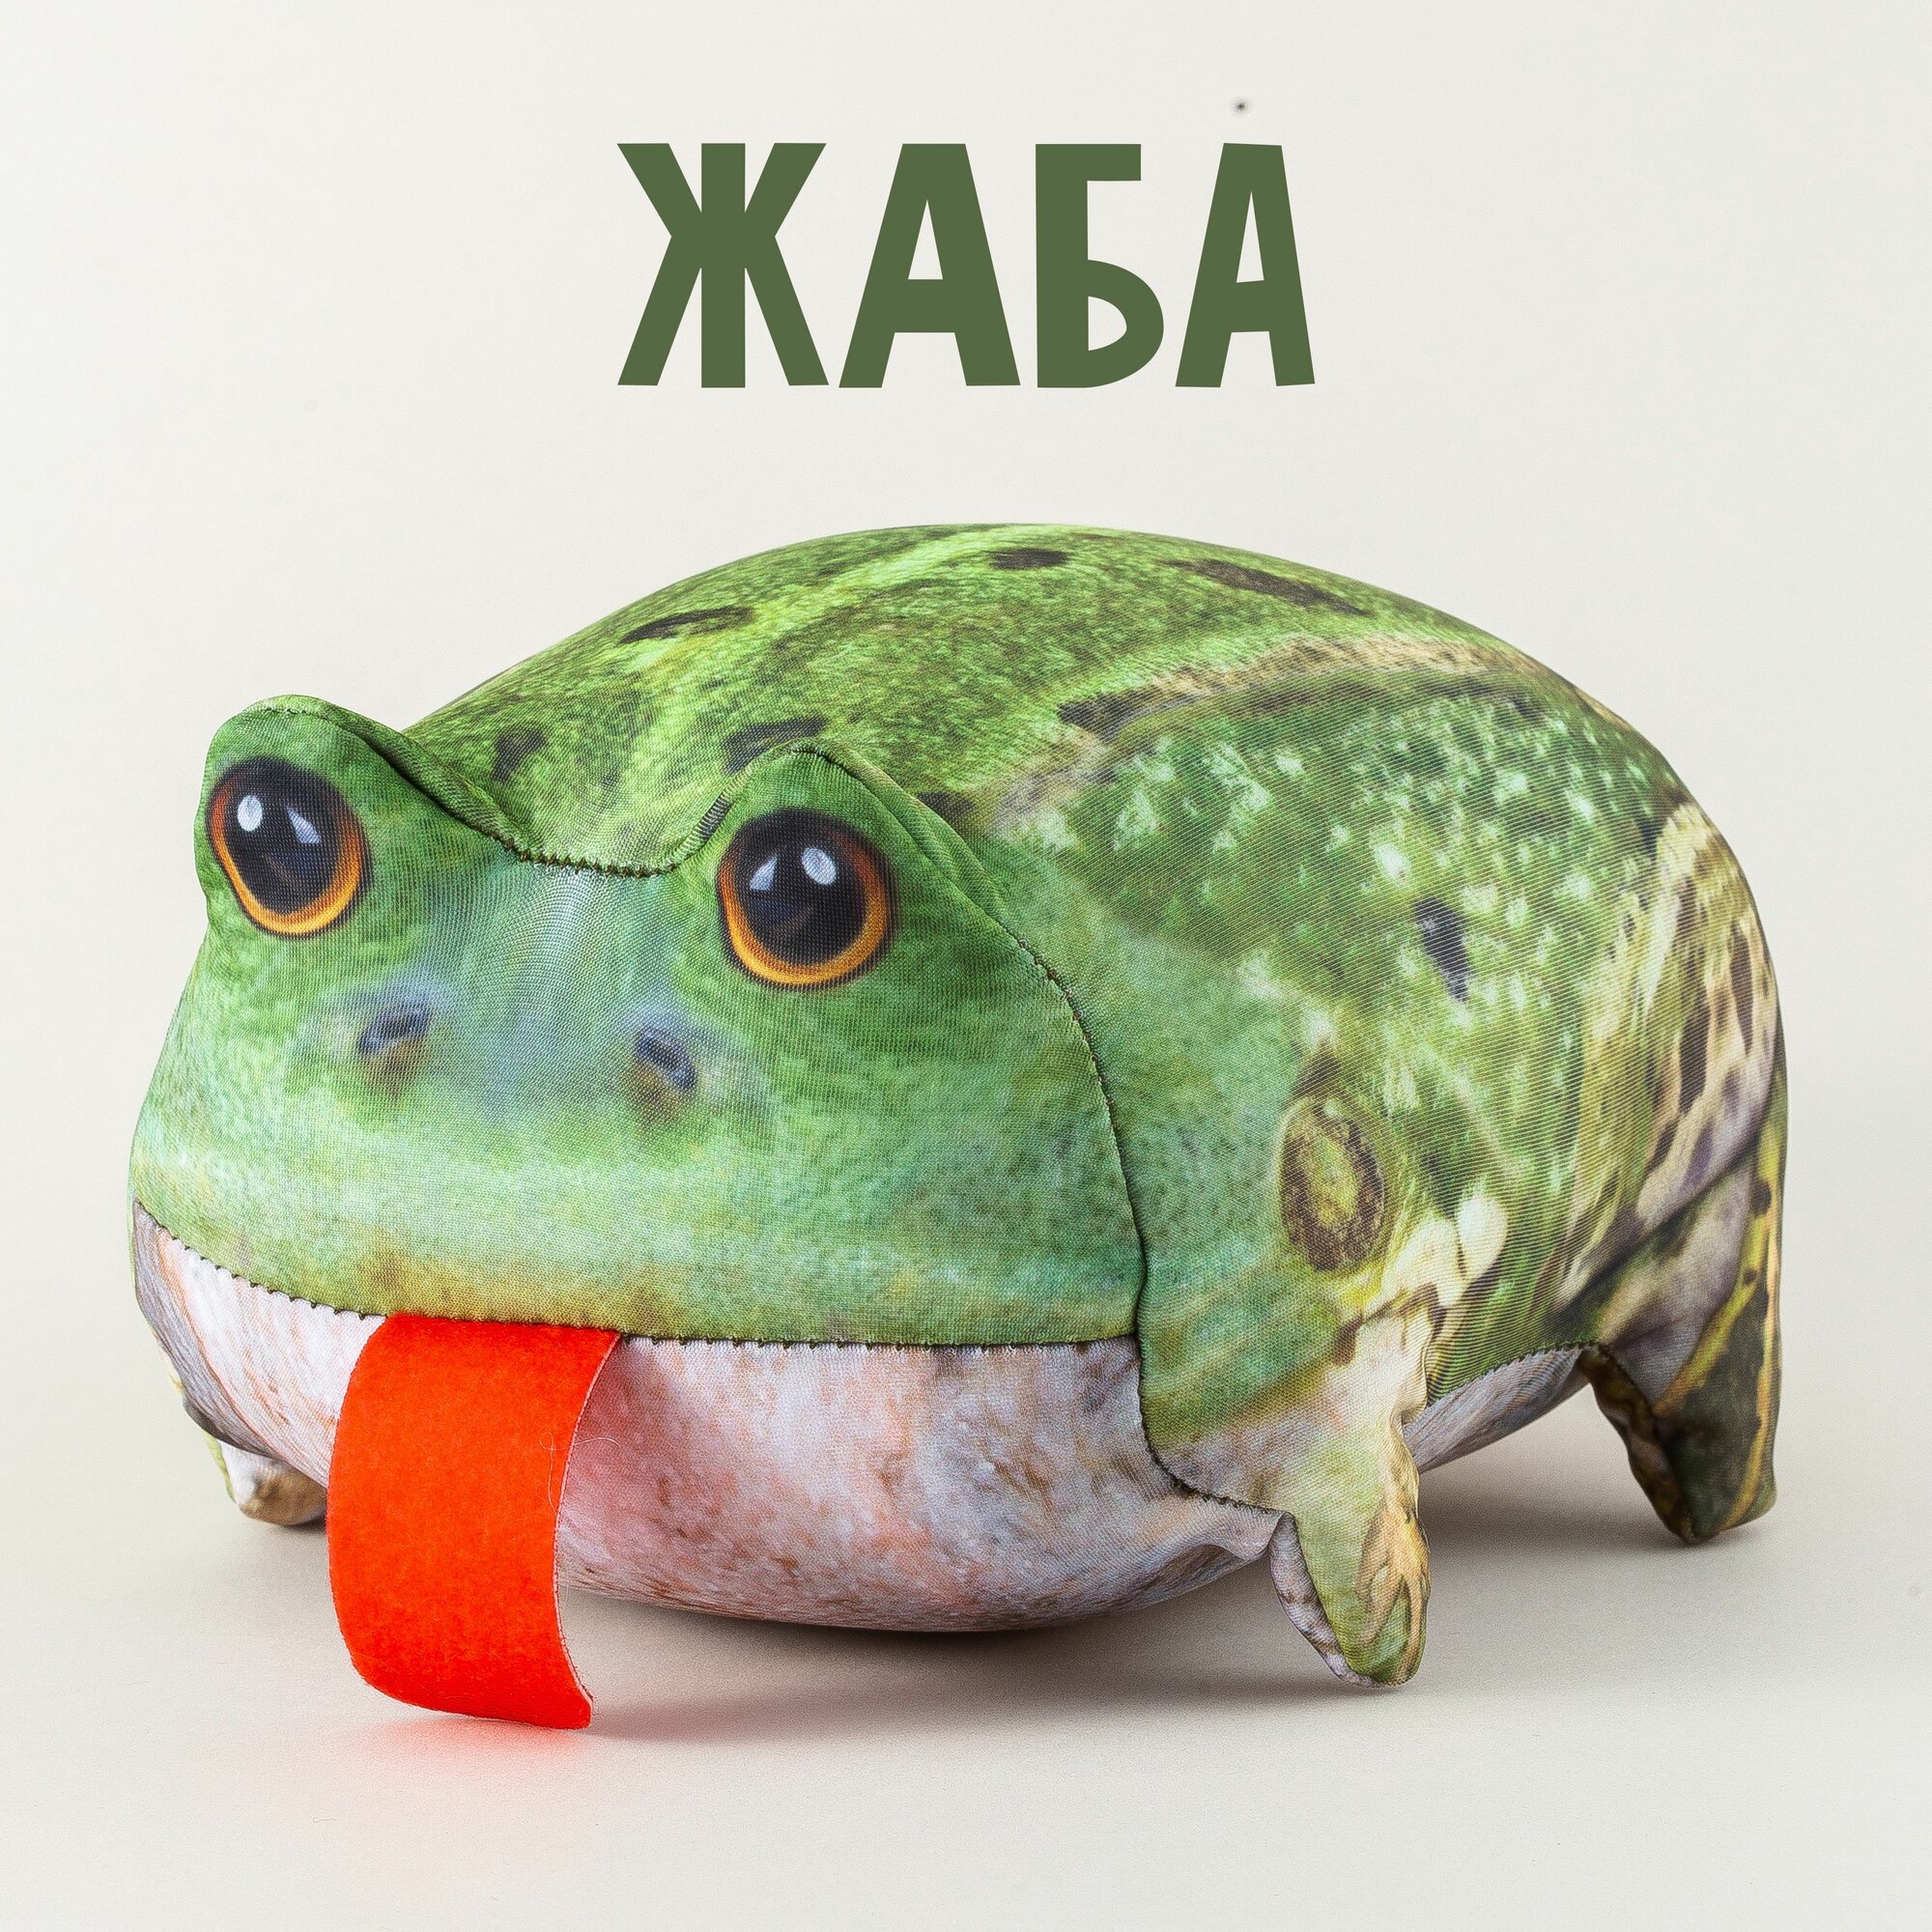 Мягкая игрушка "Жаба" лягушка антистресс 15 см, плюшевые животные от Блоптоп